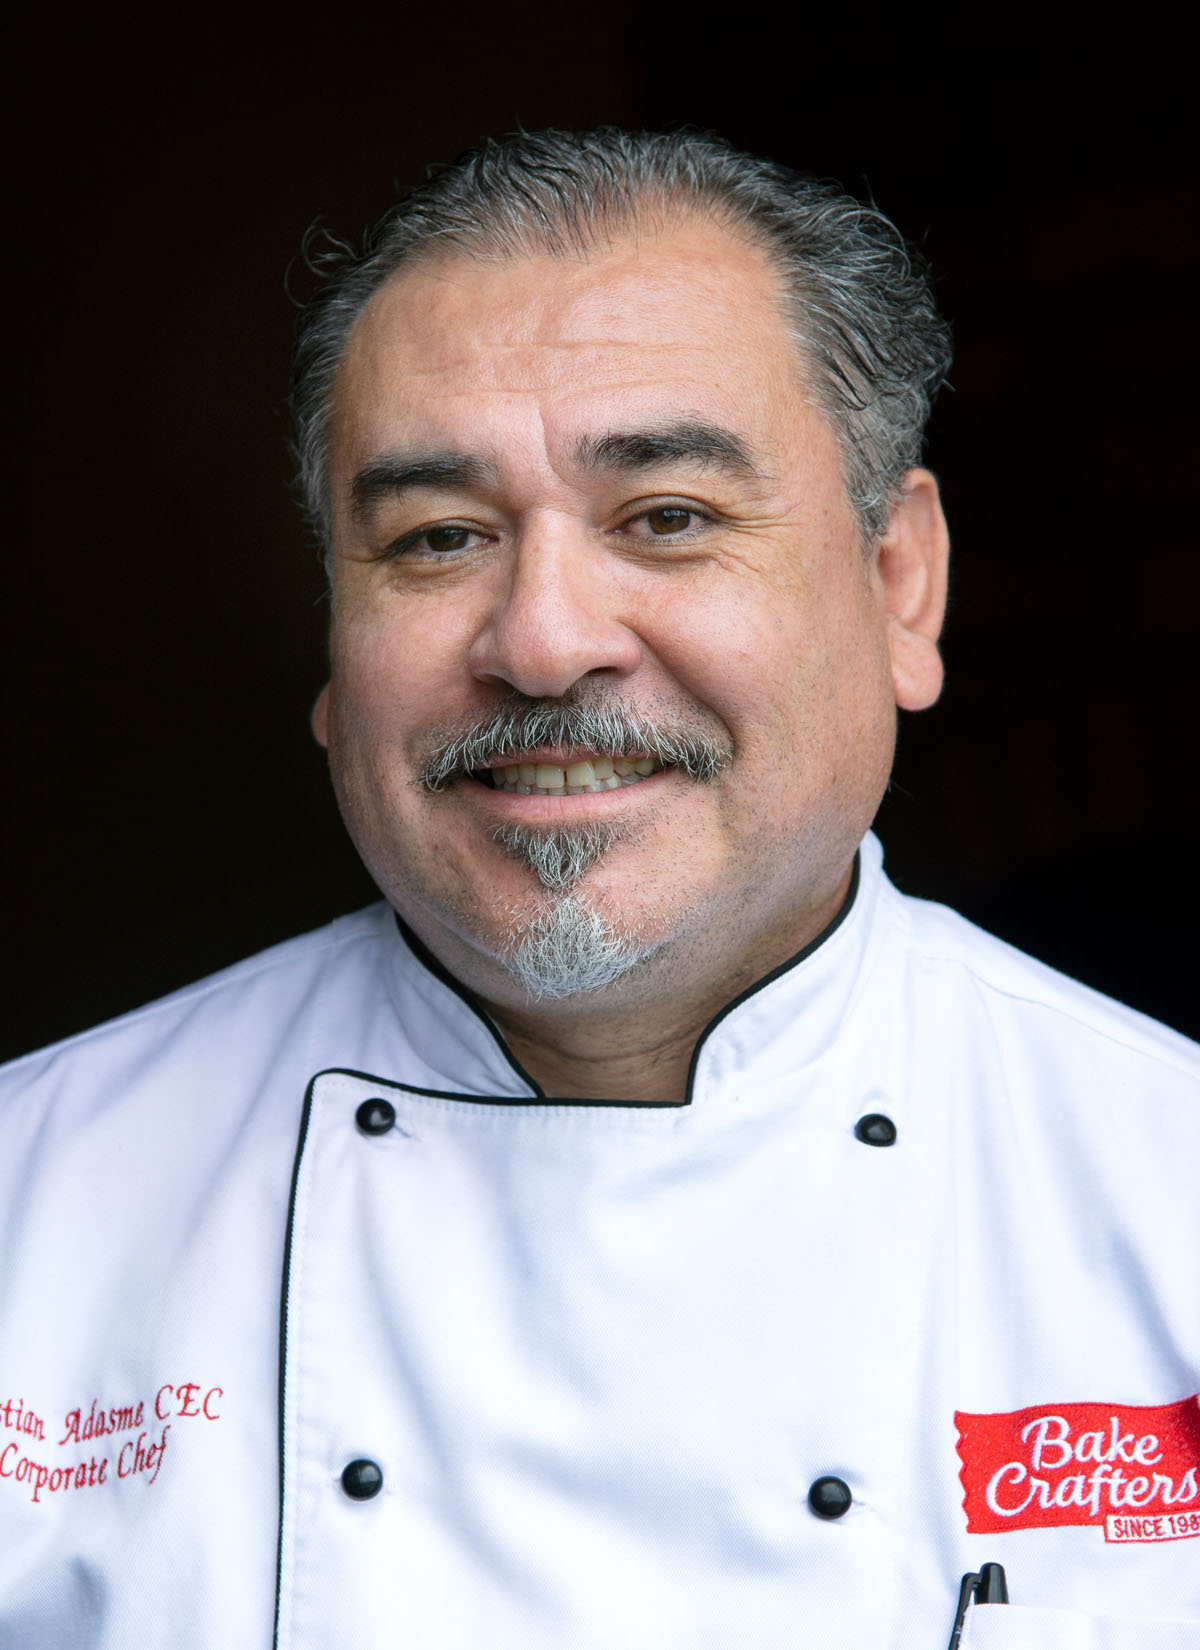 Chef Cristian Adasme, Corporate Chef